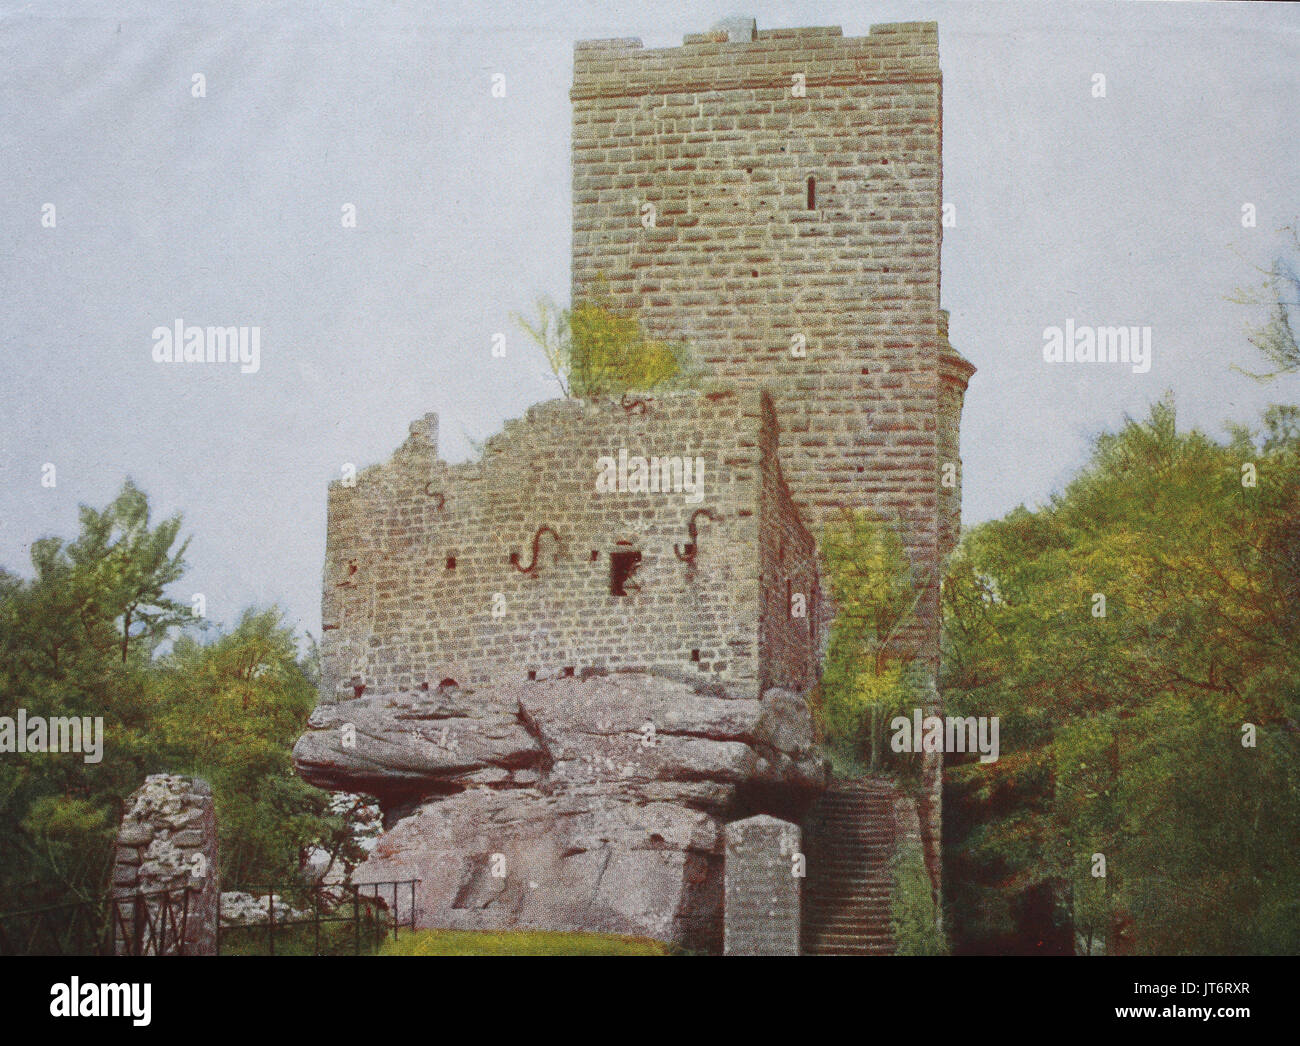 Foto storiche o castello Trifels in der Pfalz, Germania, digitale migliorata la riproduzione di un immagine pubblicata tra 1880 - 1885 Foto Stock